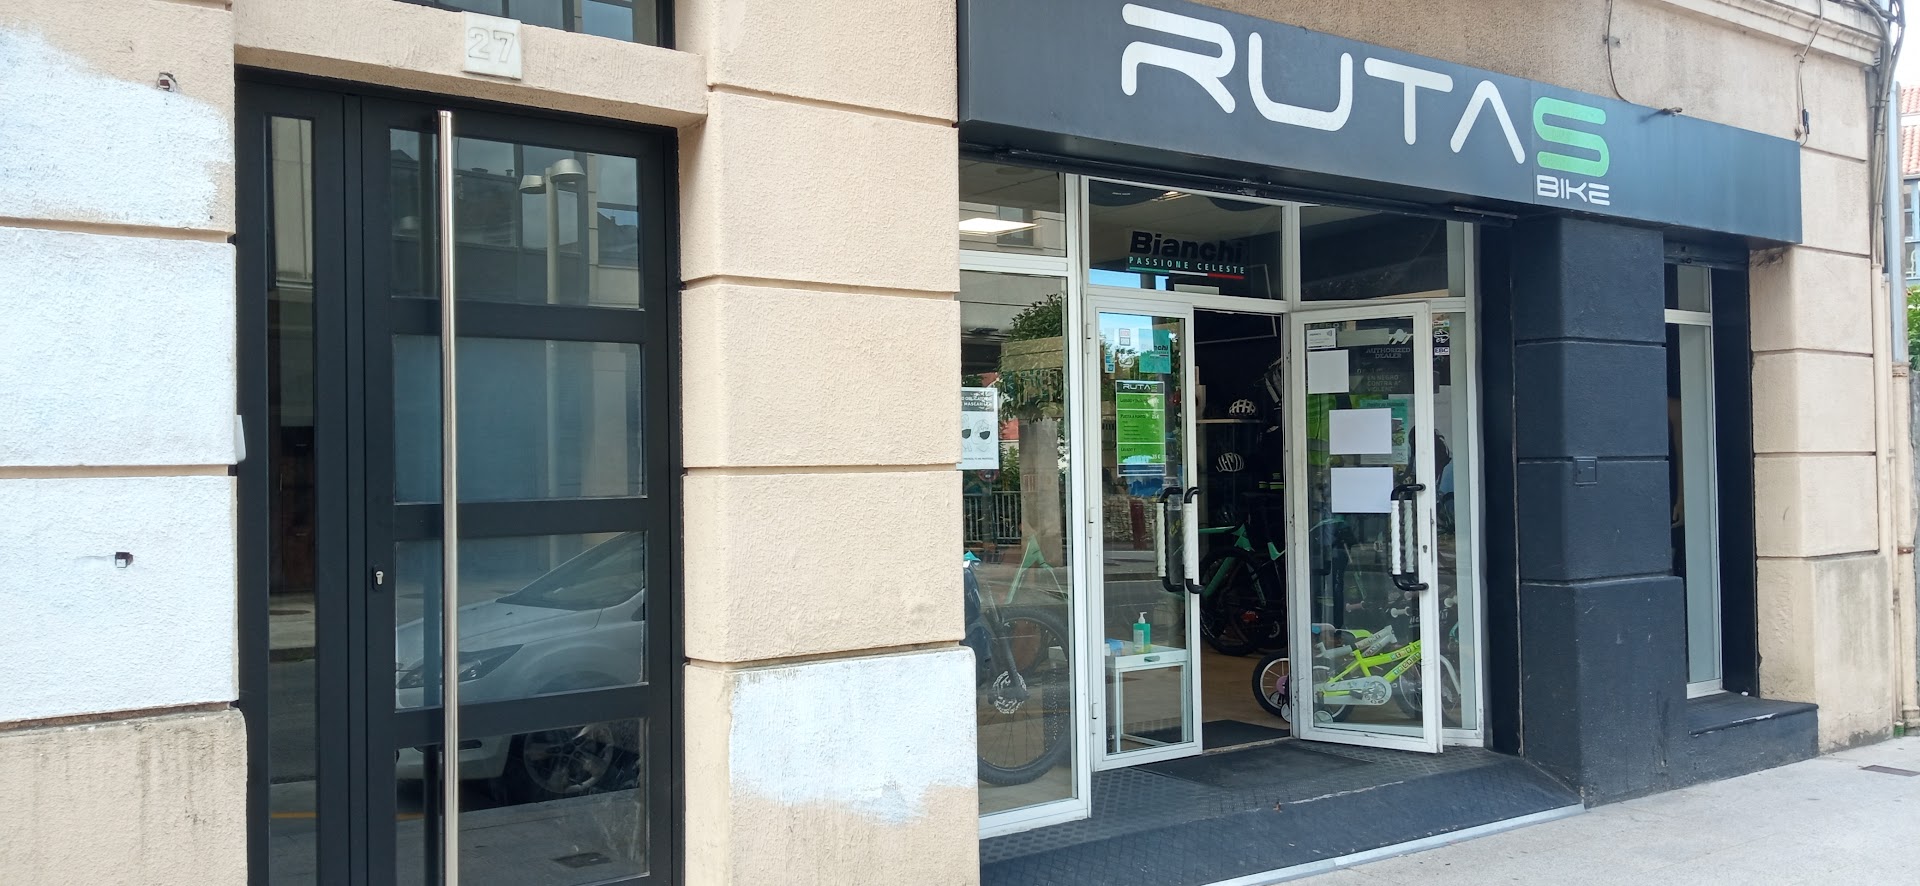 Rutasbike | Venta y reparación de bicicletas